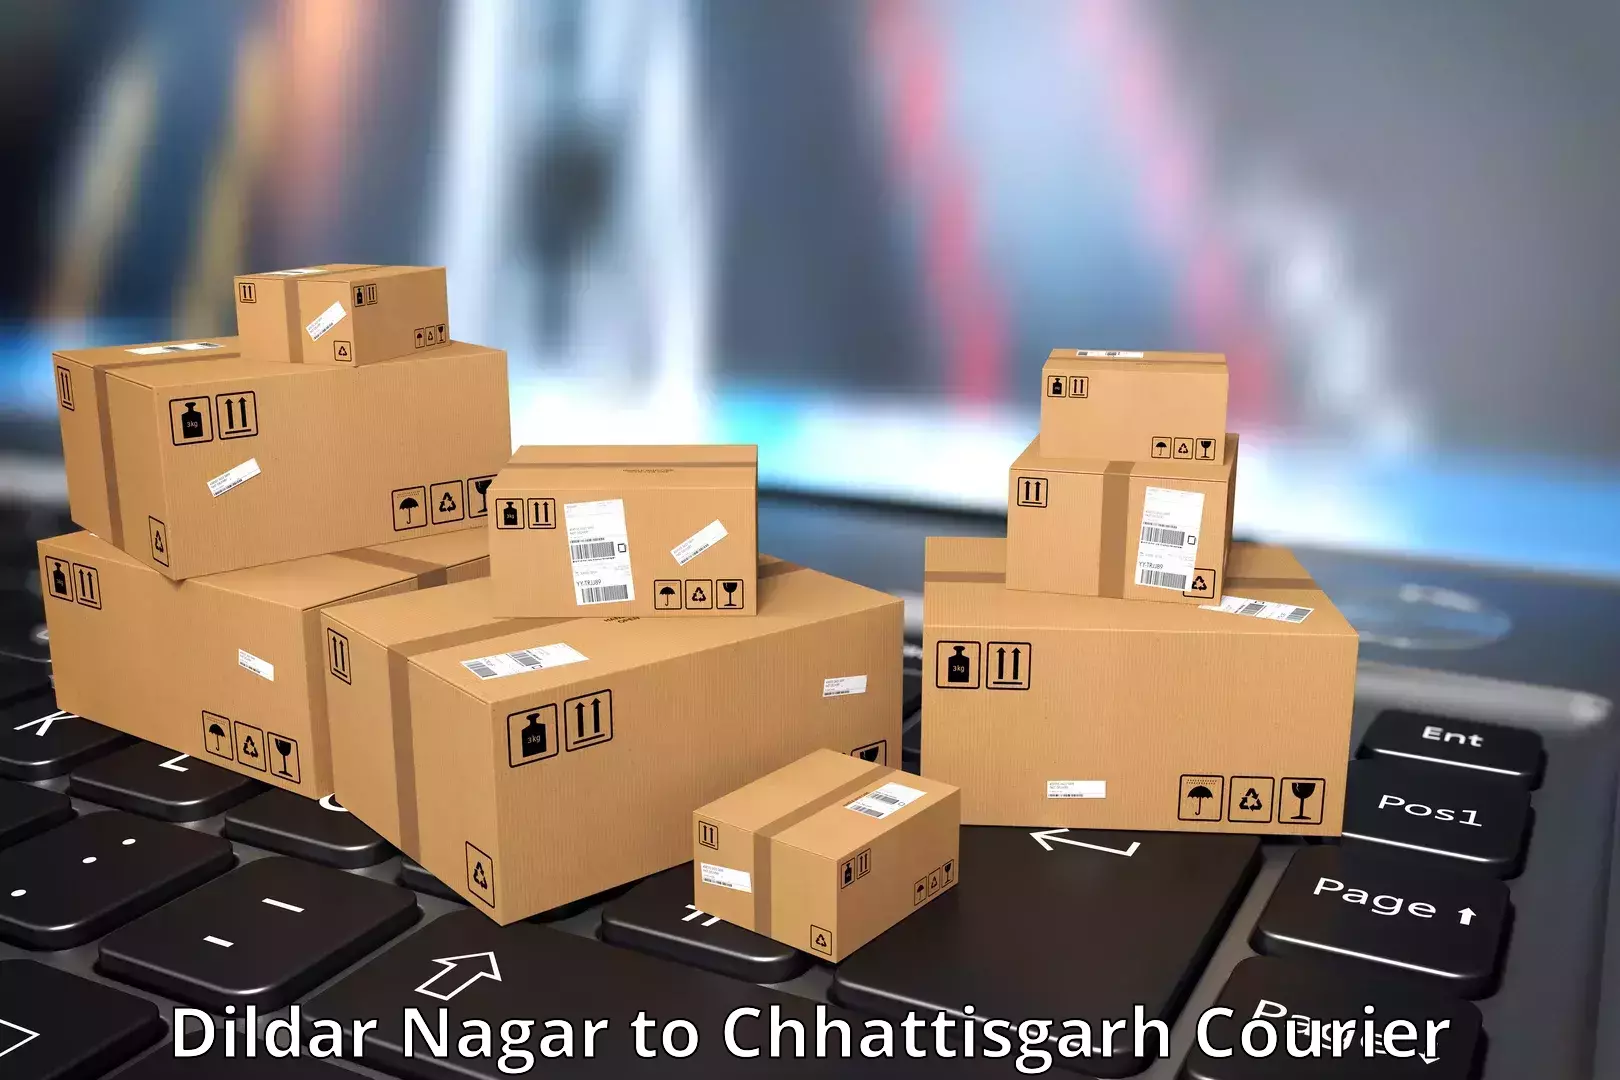 Air courier services Dildar Nagar to Raigarh Chhattisgarh